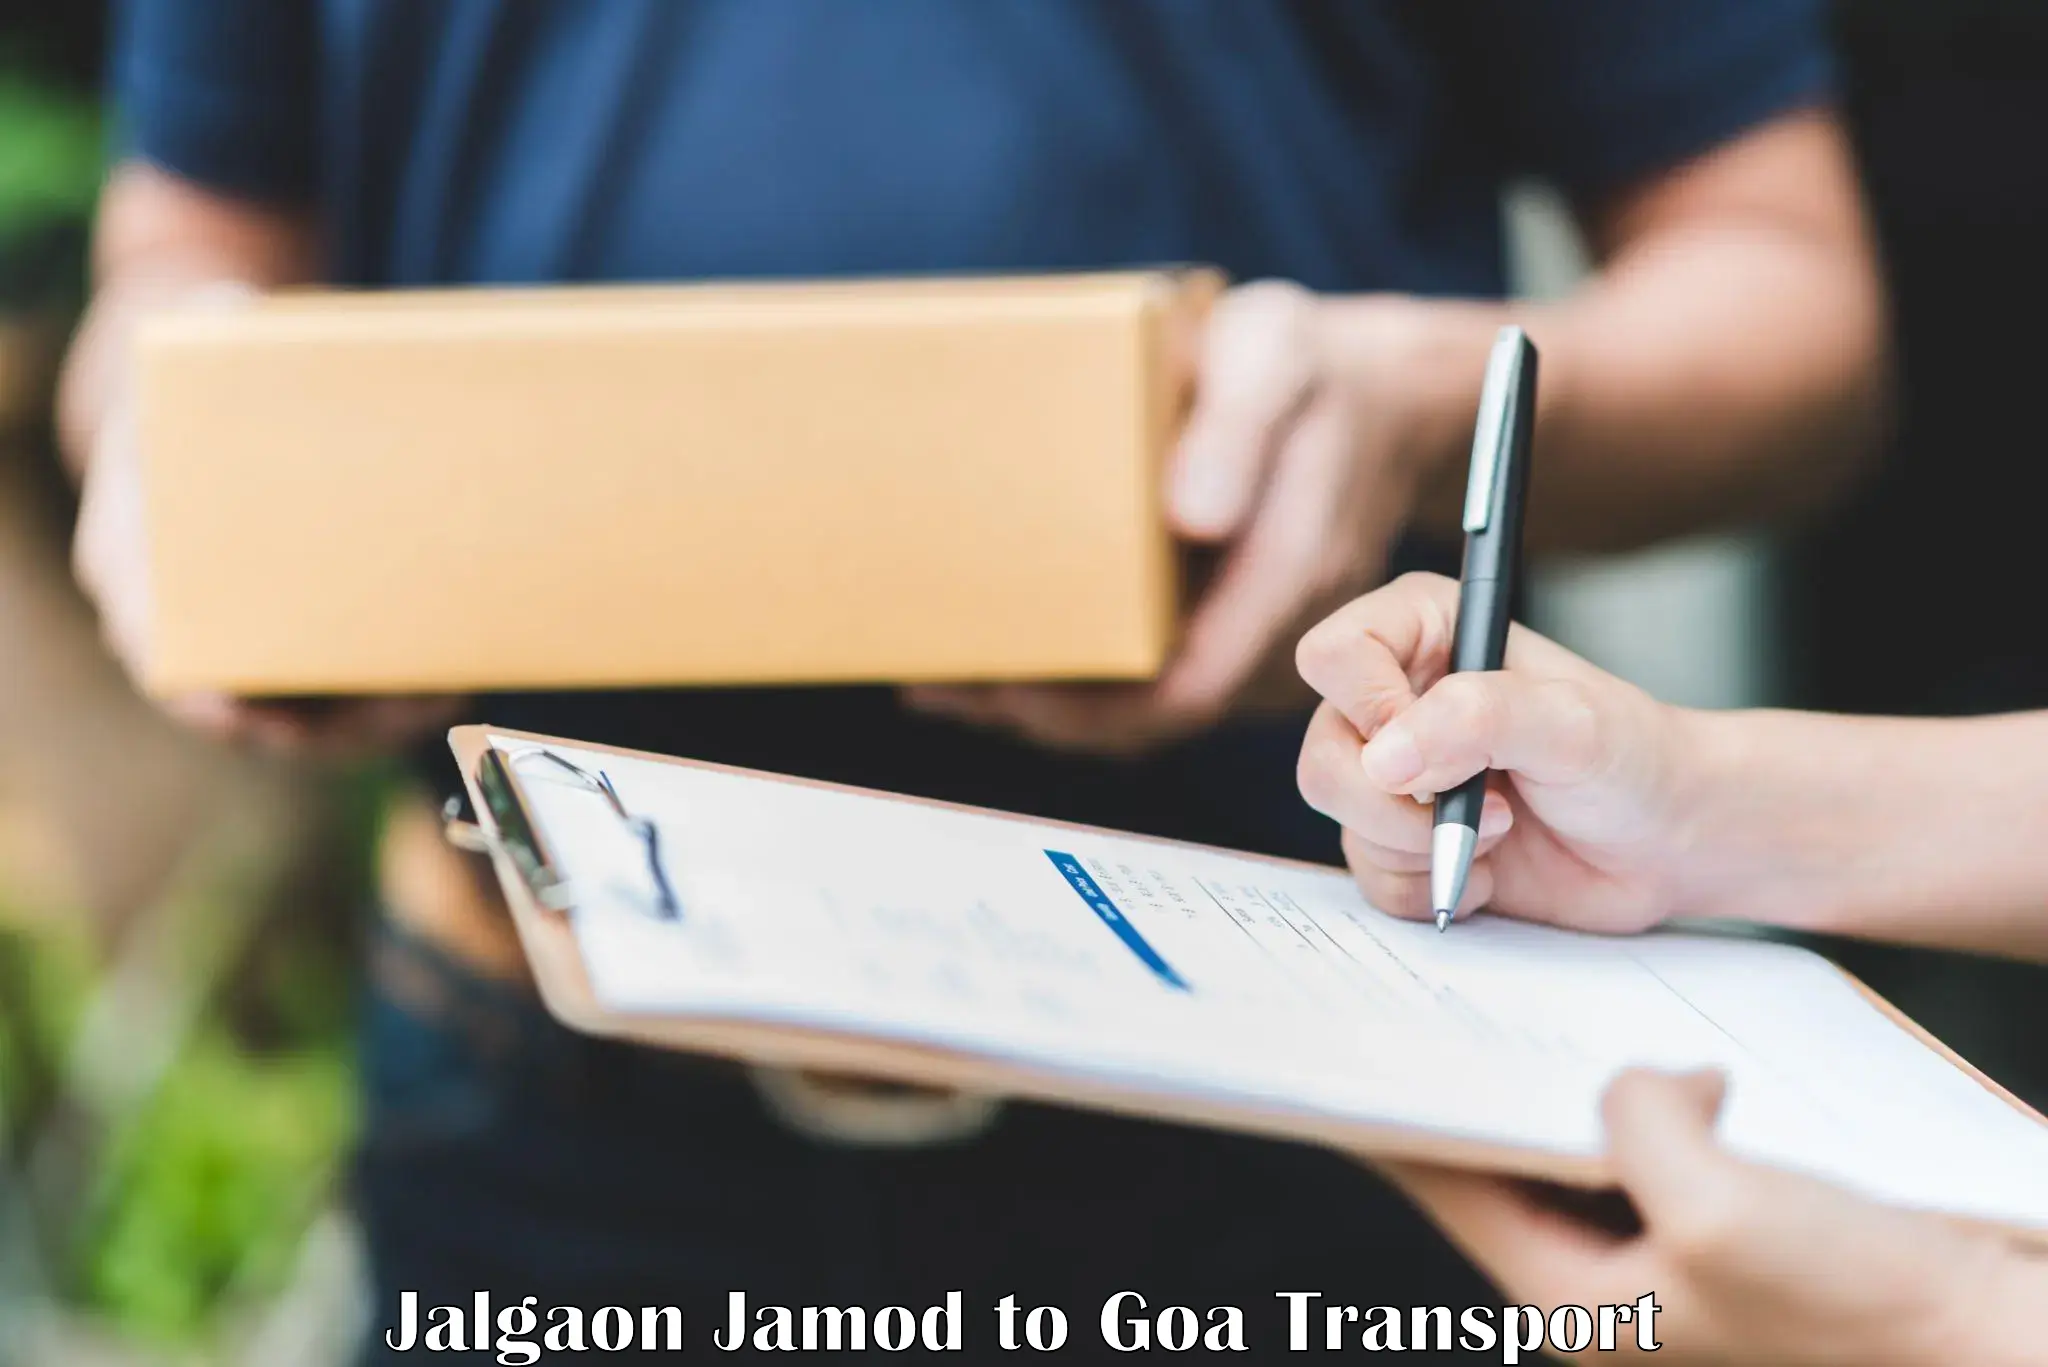 Bike transport service Jalgaon Jamod to Vasco da Gama